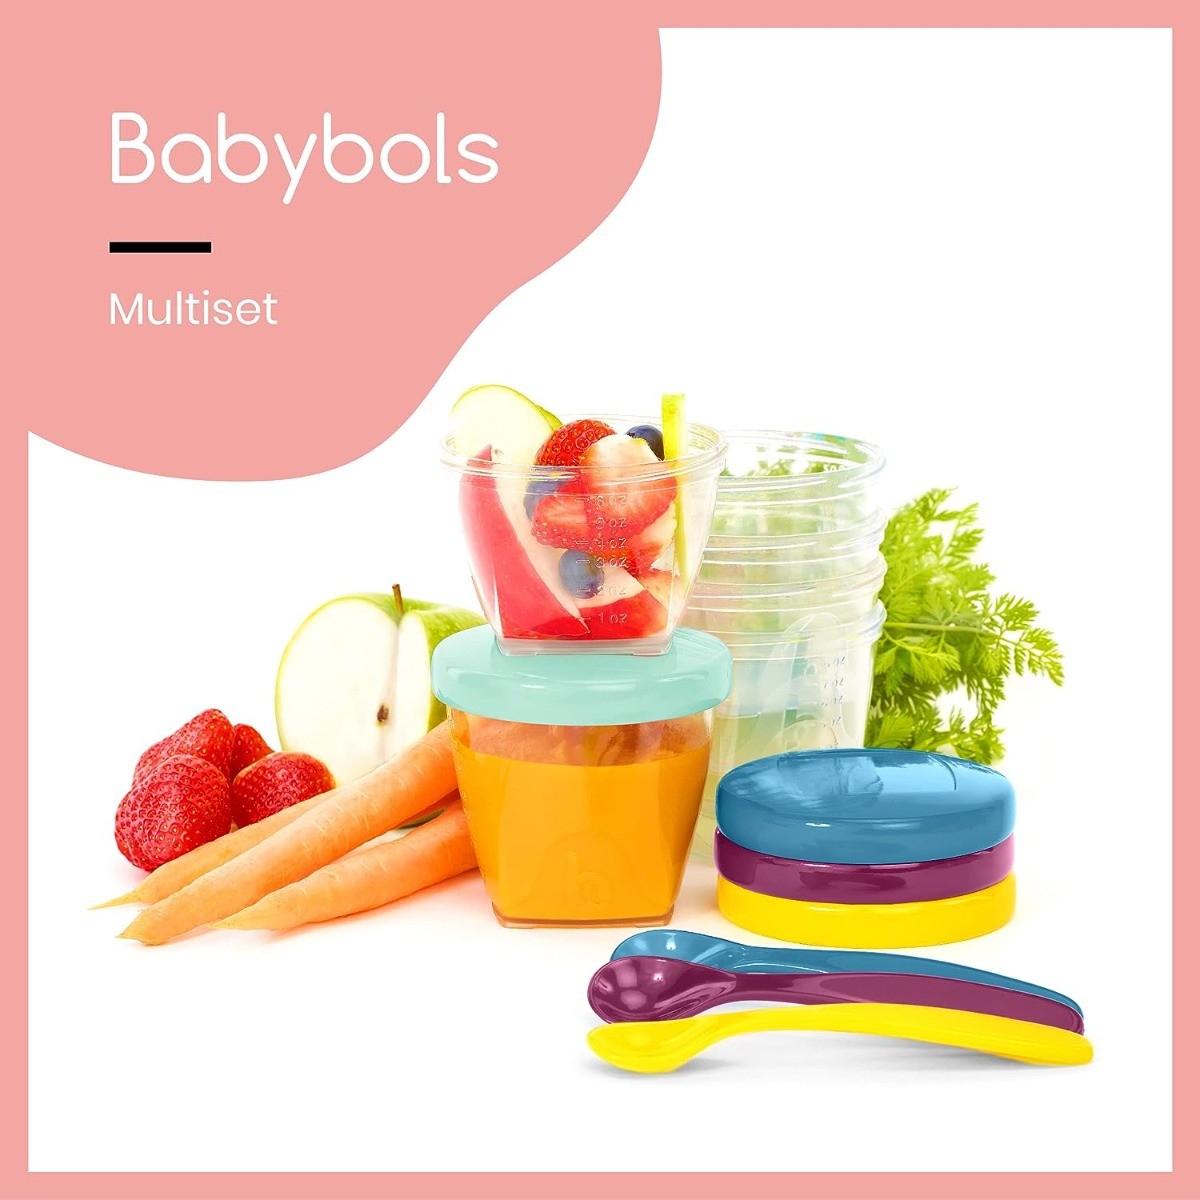 Buy Babymoov Babybols Food Storage Multiset Online